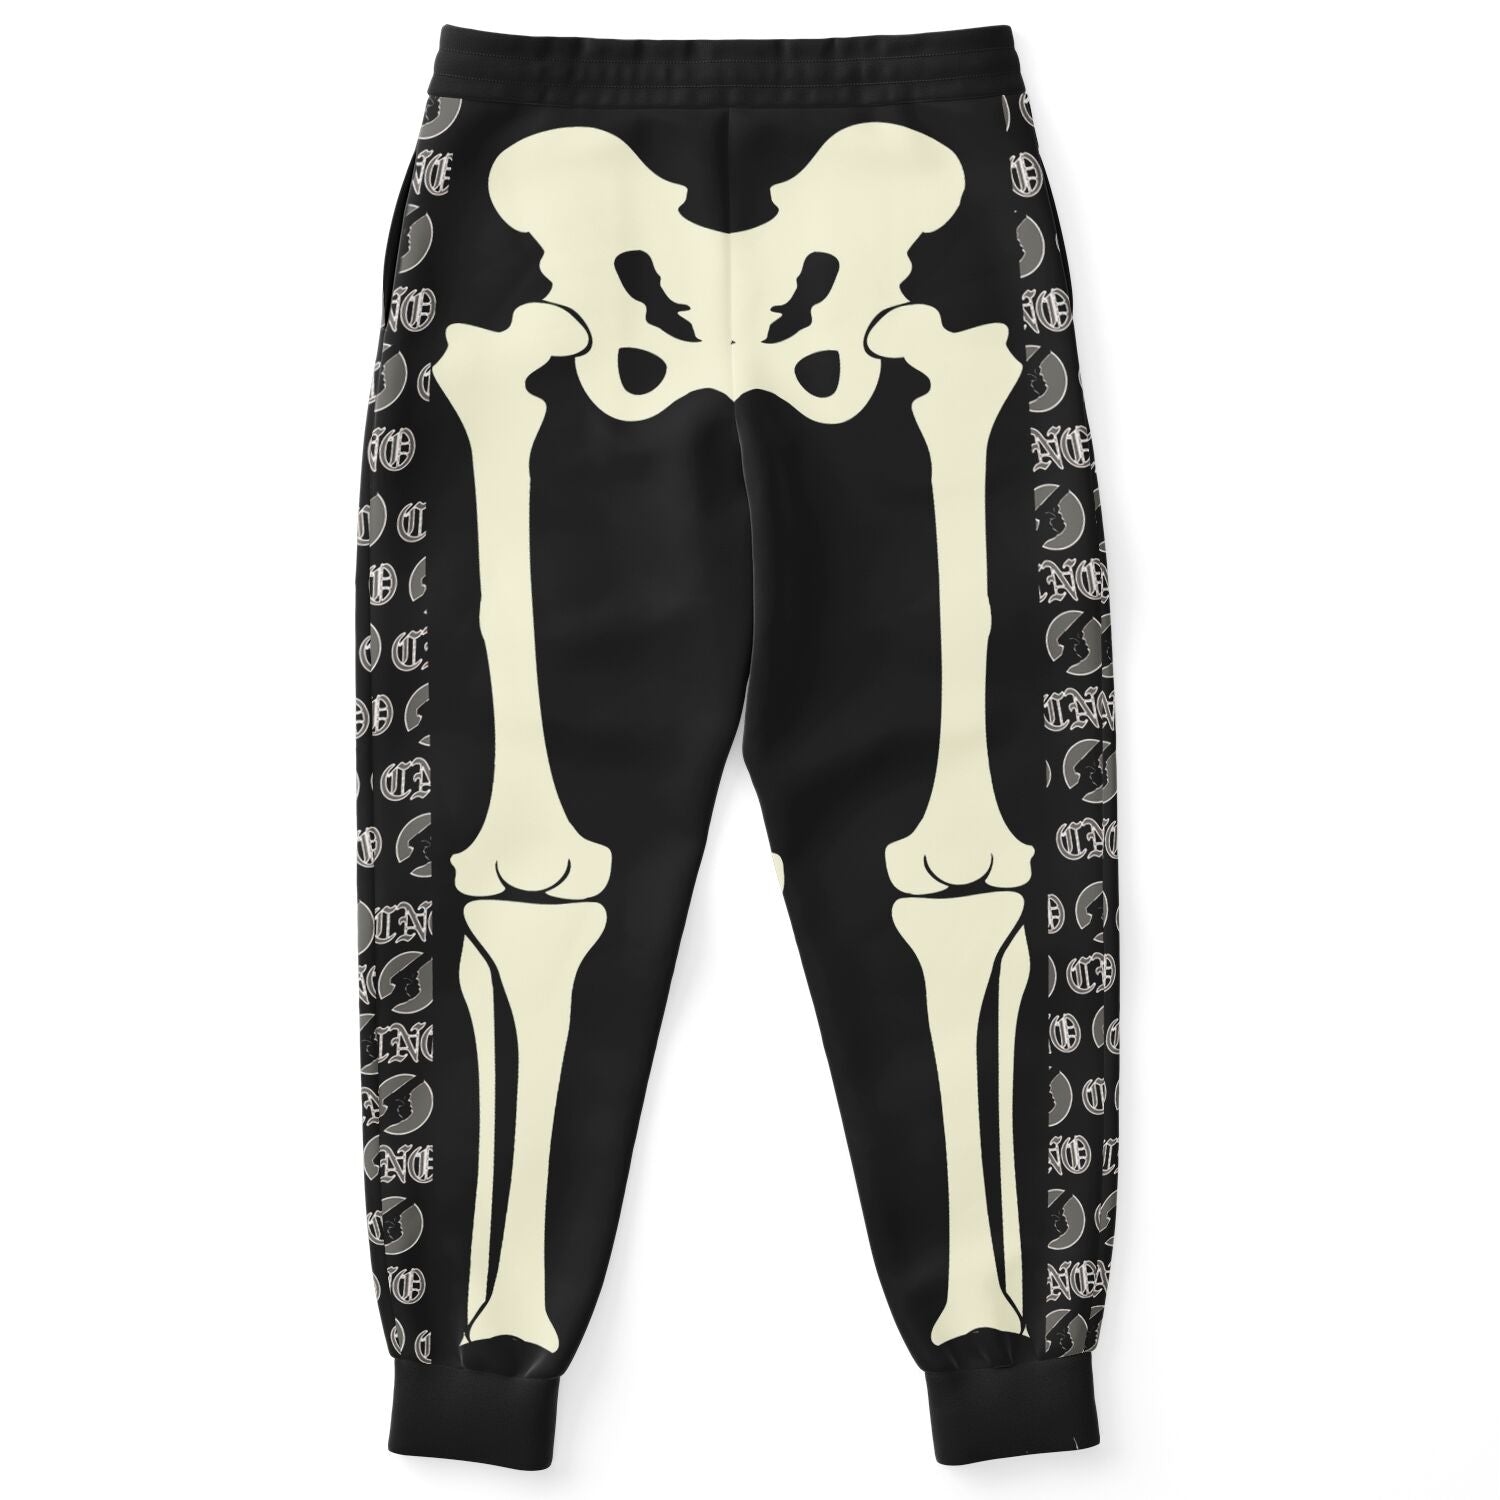 Nike Men's Skeleton Pants